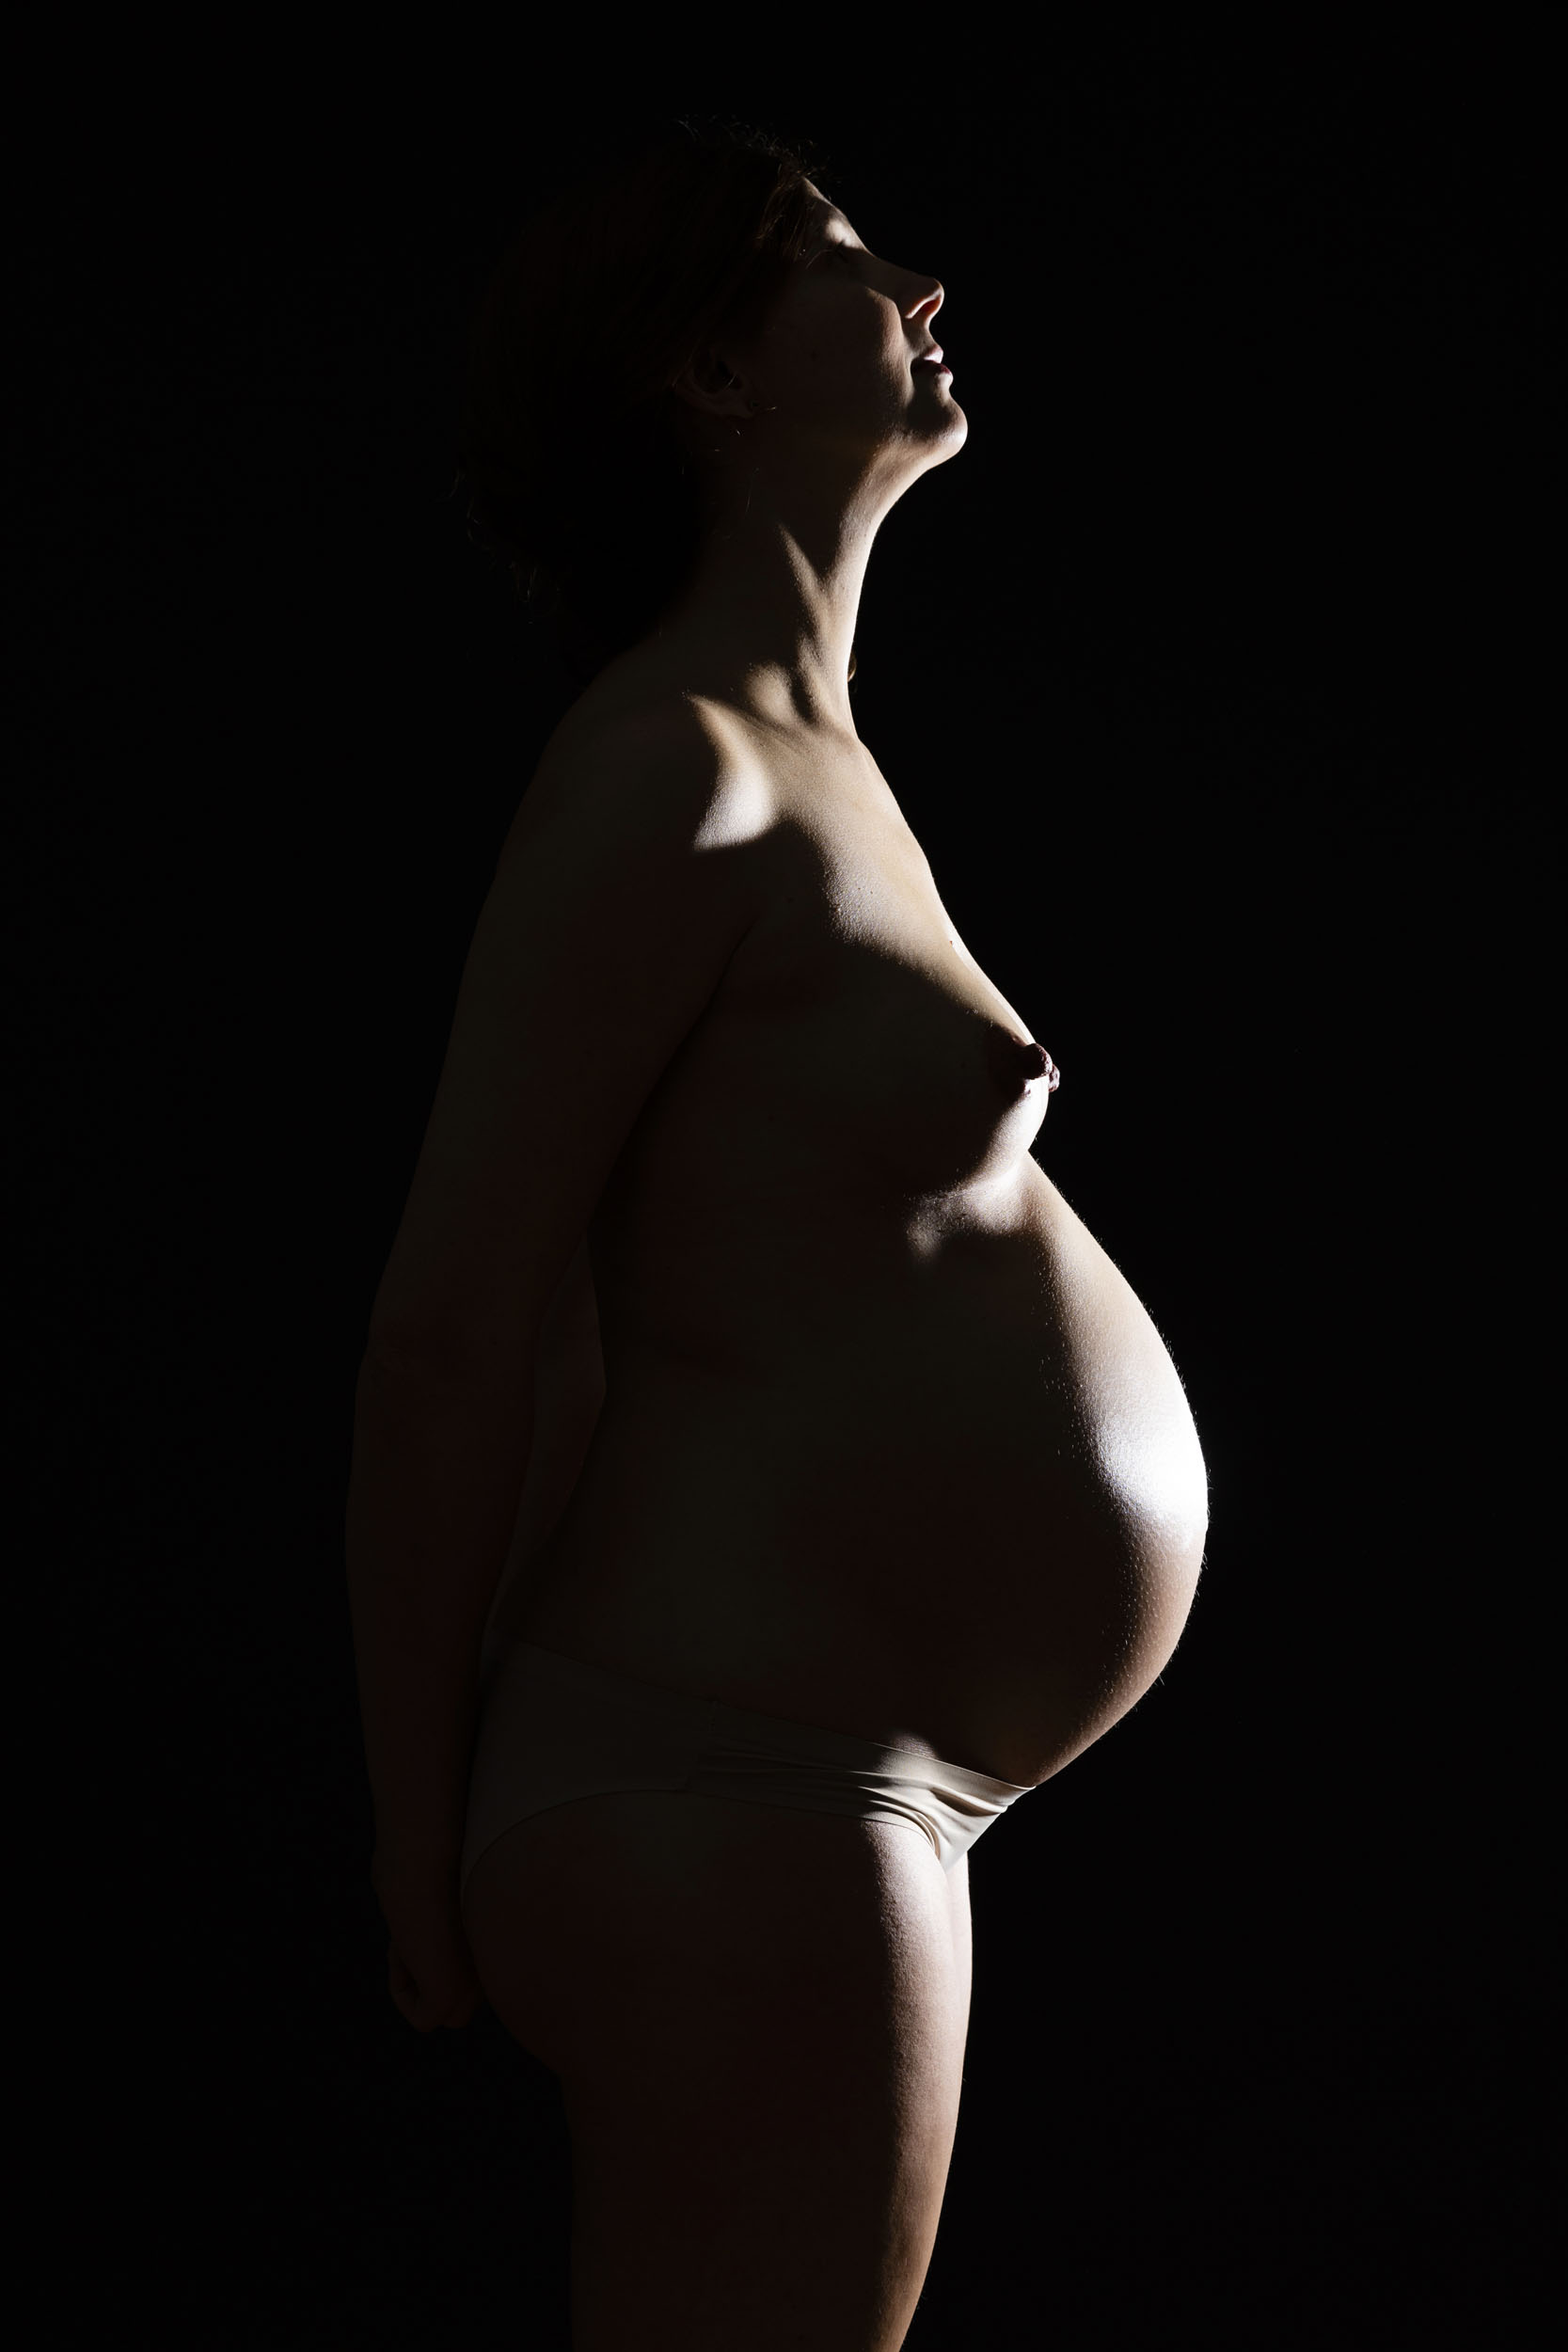 Portrait de profil d'une femme enceinte nue en contre-jour sur fond noir. Photographie de portrait réalisée en studio pour la banque d'images Plainpicture.